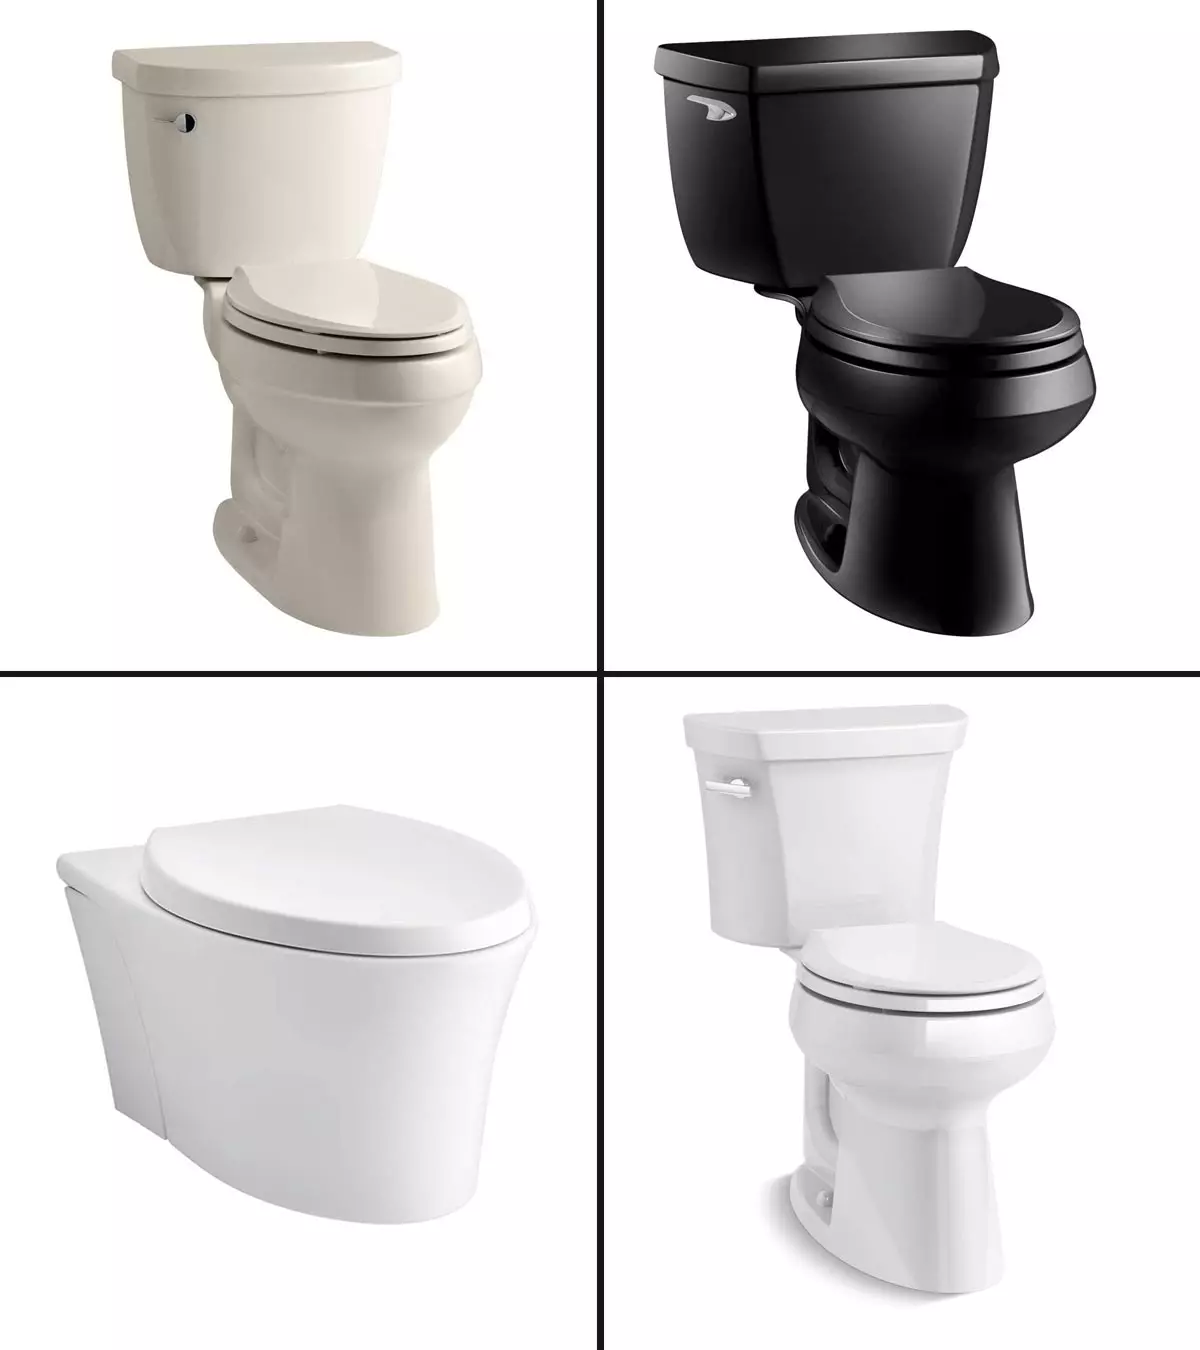 11 Best Kohler Toilets in 2021